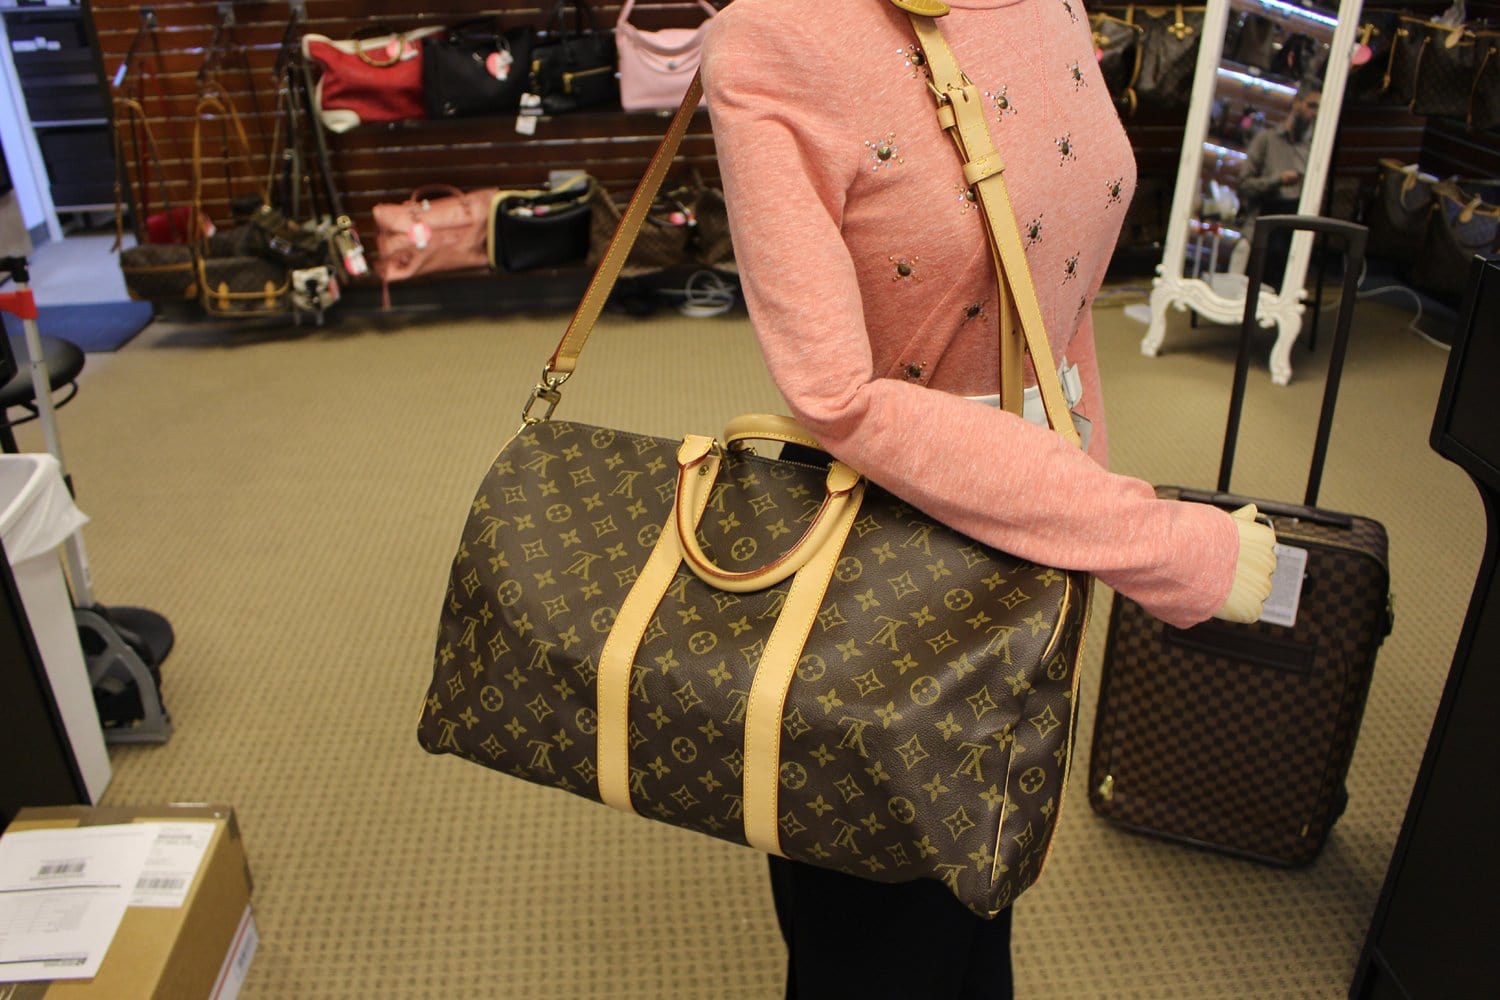 Louis Vuitton Boston Bag Women M41422 Keepall 60 Monogram W/Shoulder Strap